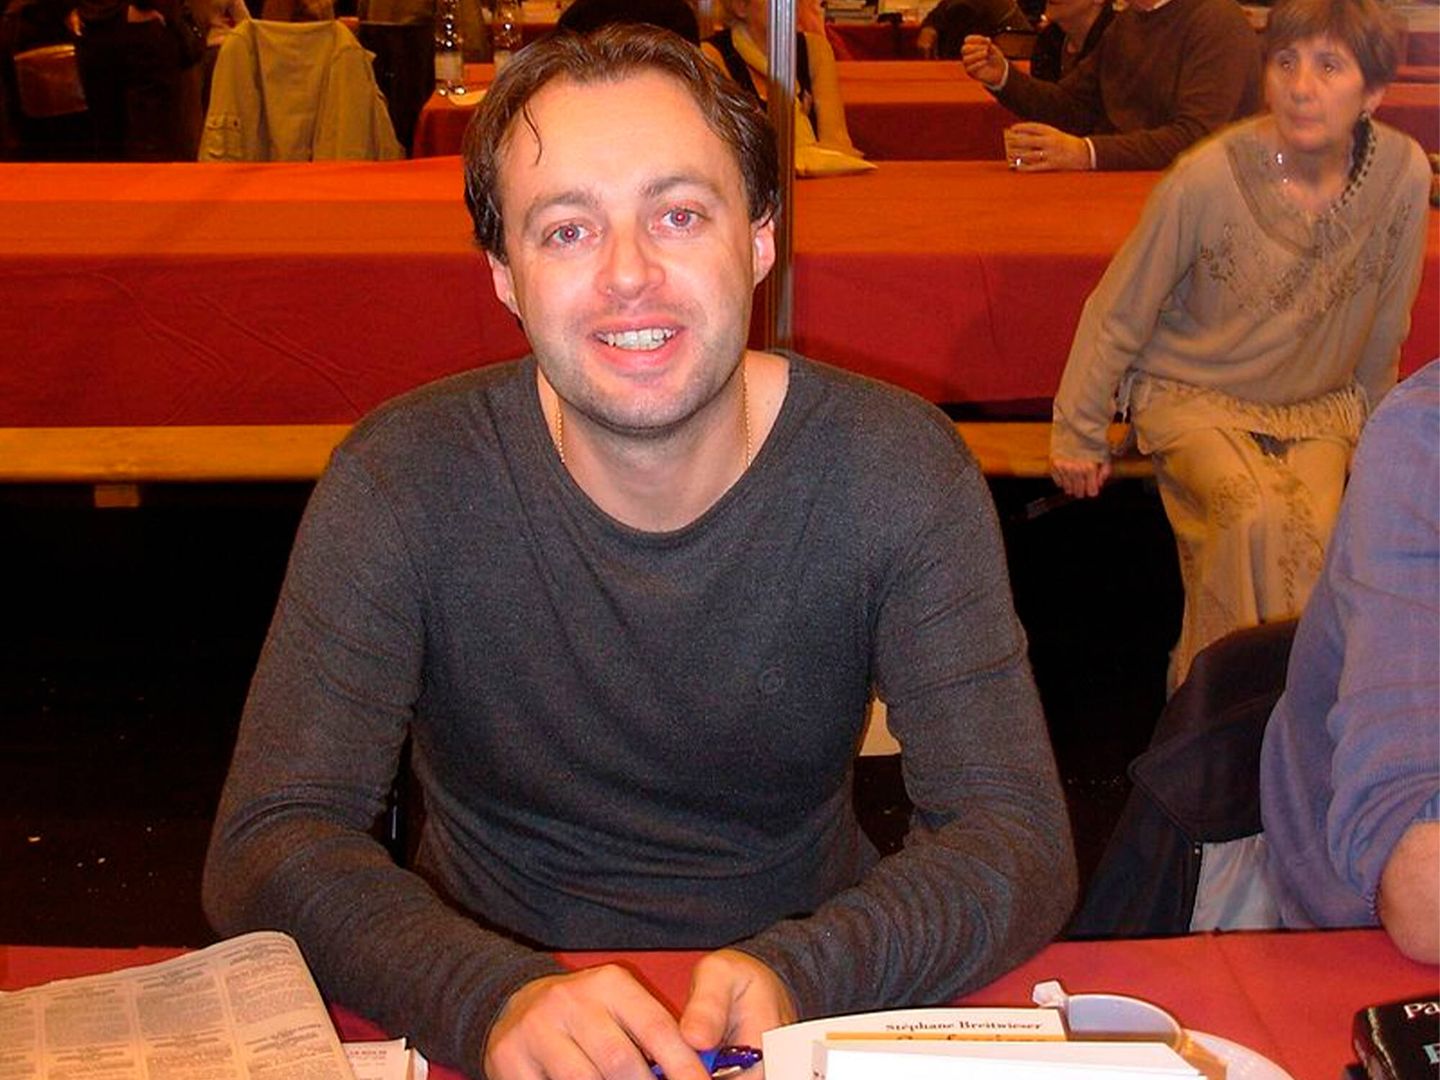  Stéphane Breitwieser en el salón del libro de Colmar, Francia, el 26 de noviembre de 2006. (Wikipedia)